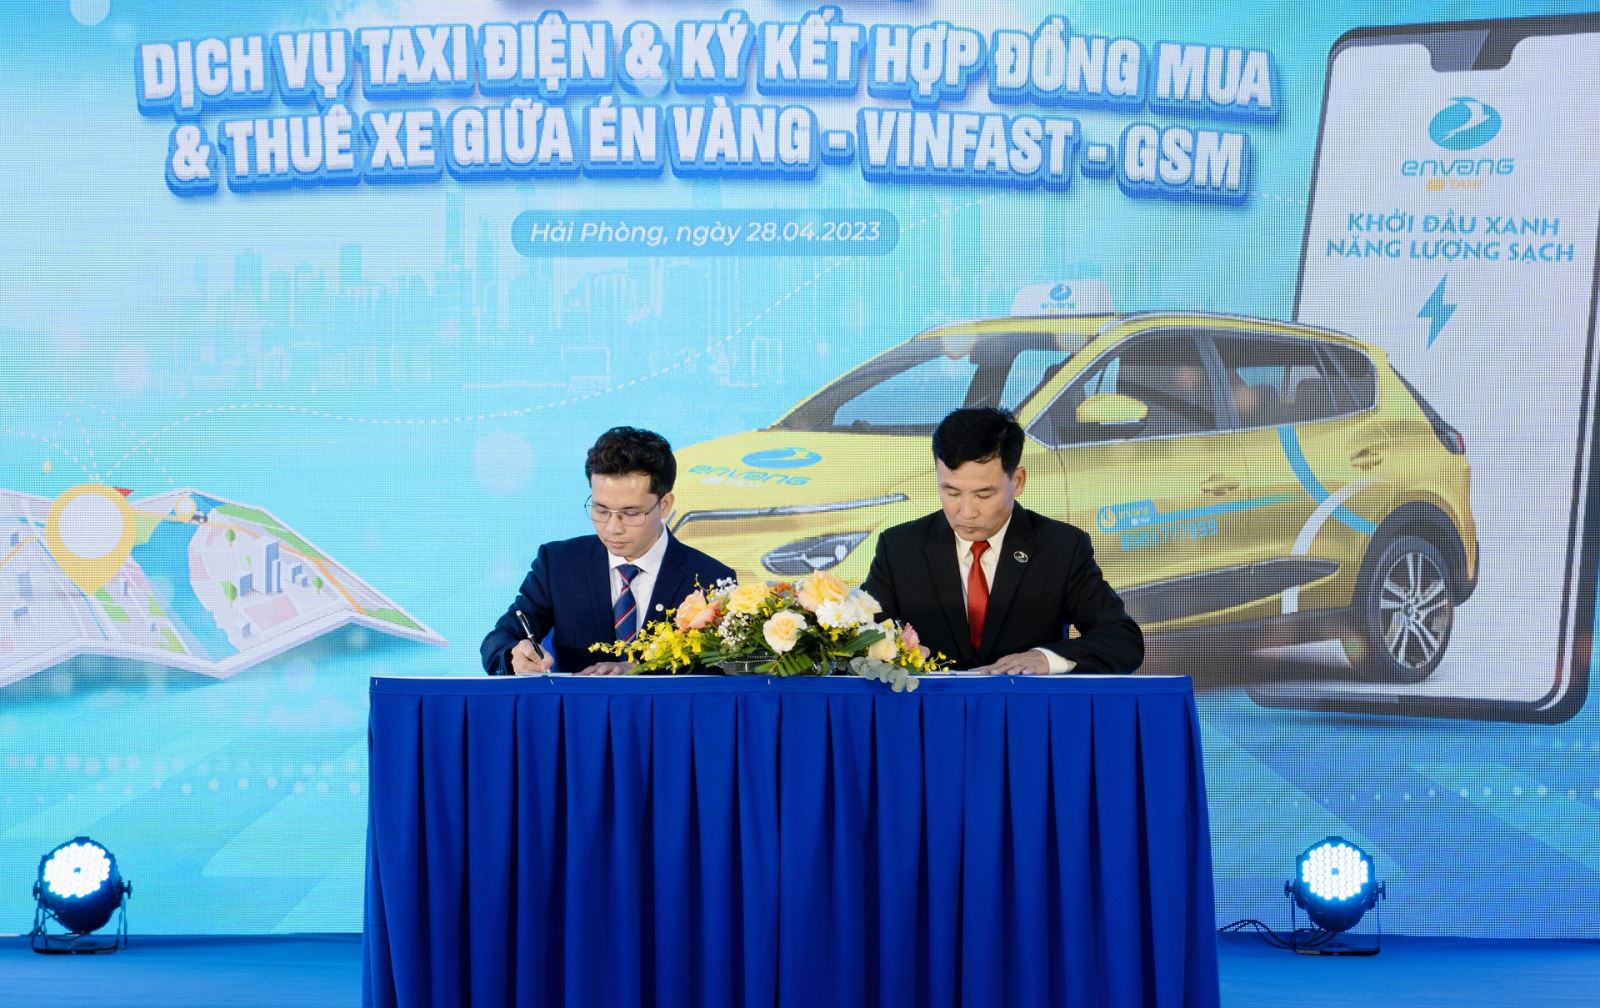 Là nhà cung cấp dịch vụ taxi điện đầu tiên ở Hải Phòng, Én Vàng mua và thuê 150 xe ô tô điện VinFast.